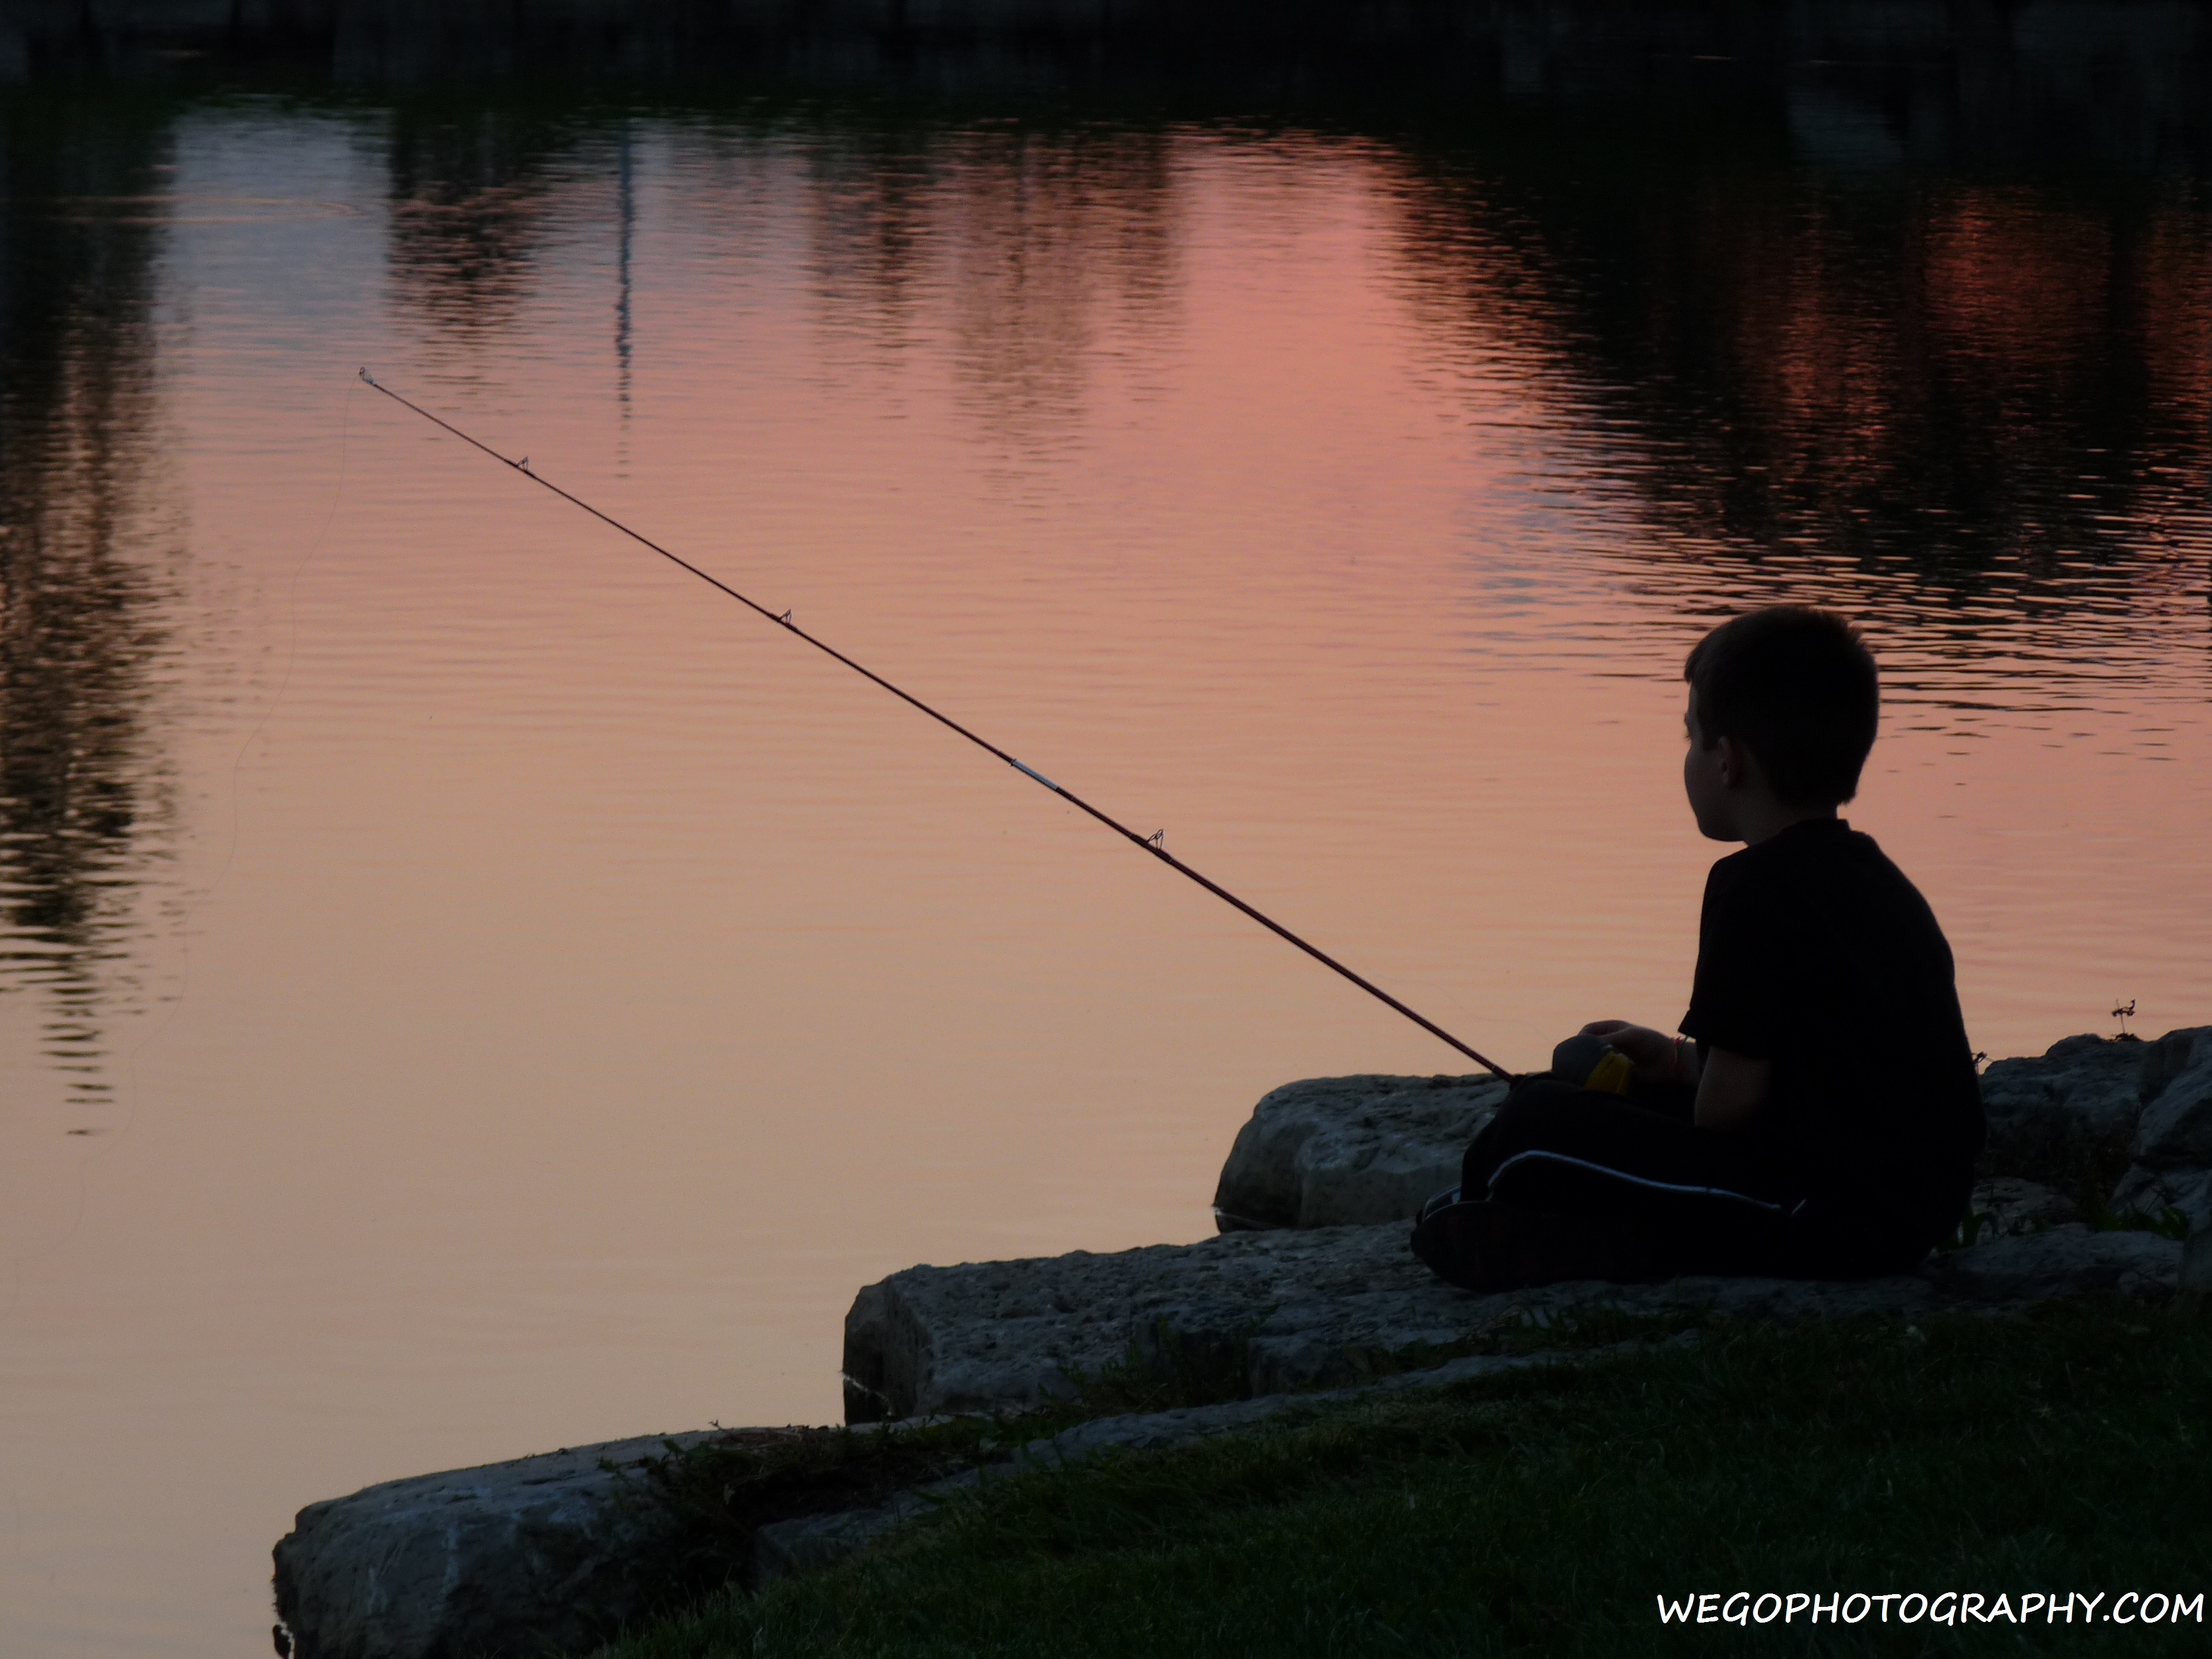 Photography Boy Fishing Sunset on Lake | Dayton, Ohio Photo